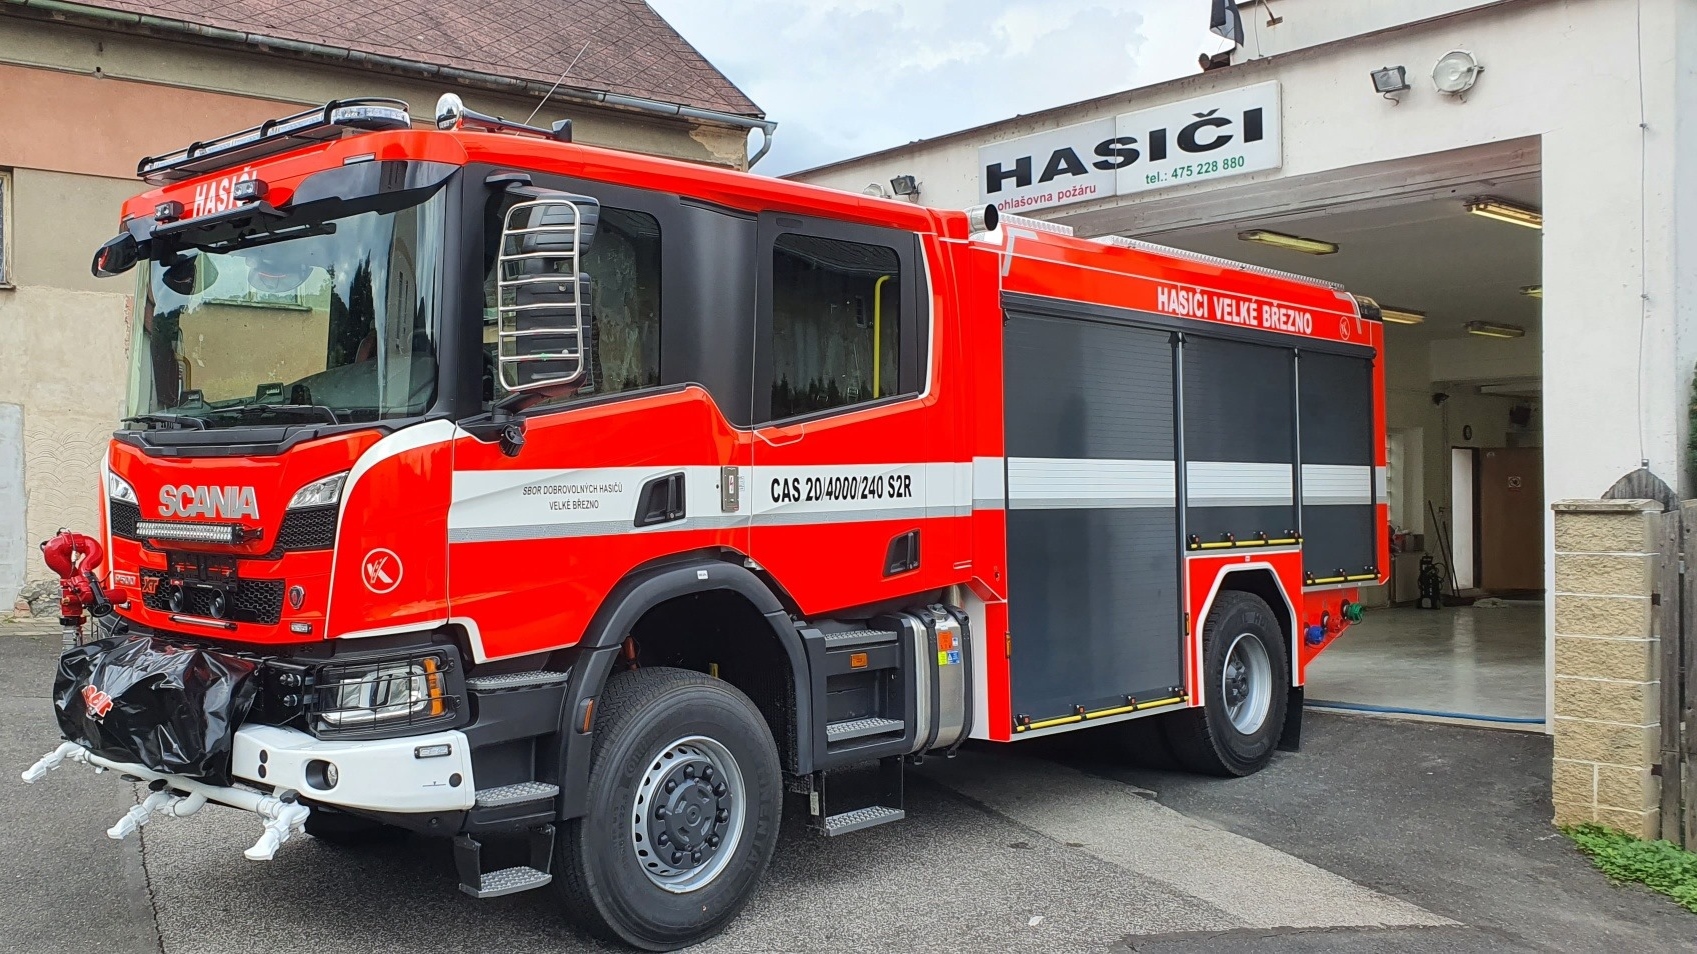 Foto: Dobrovolní hasiči z Velkého Března mají nové auto! Jedná se o cisternu CAS 20 Scania